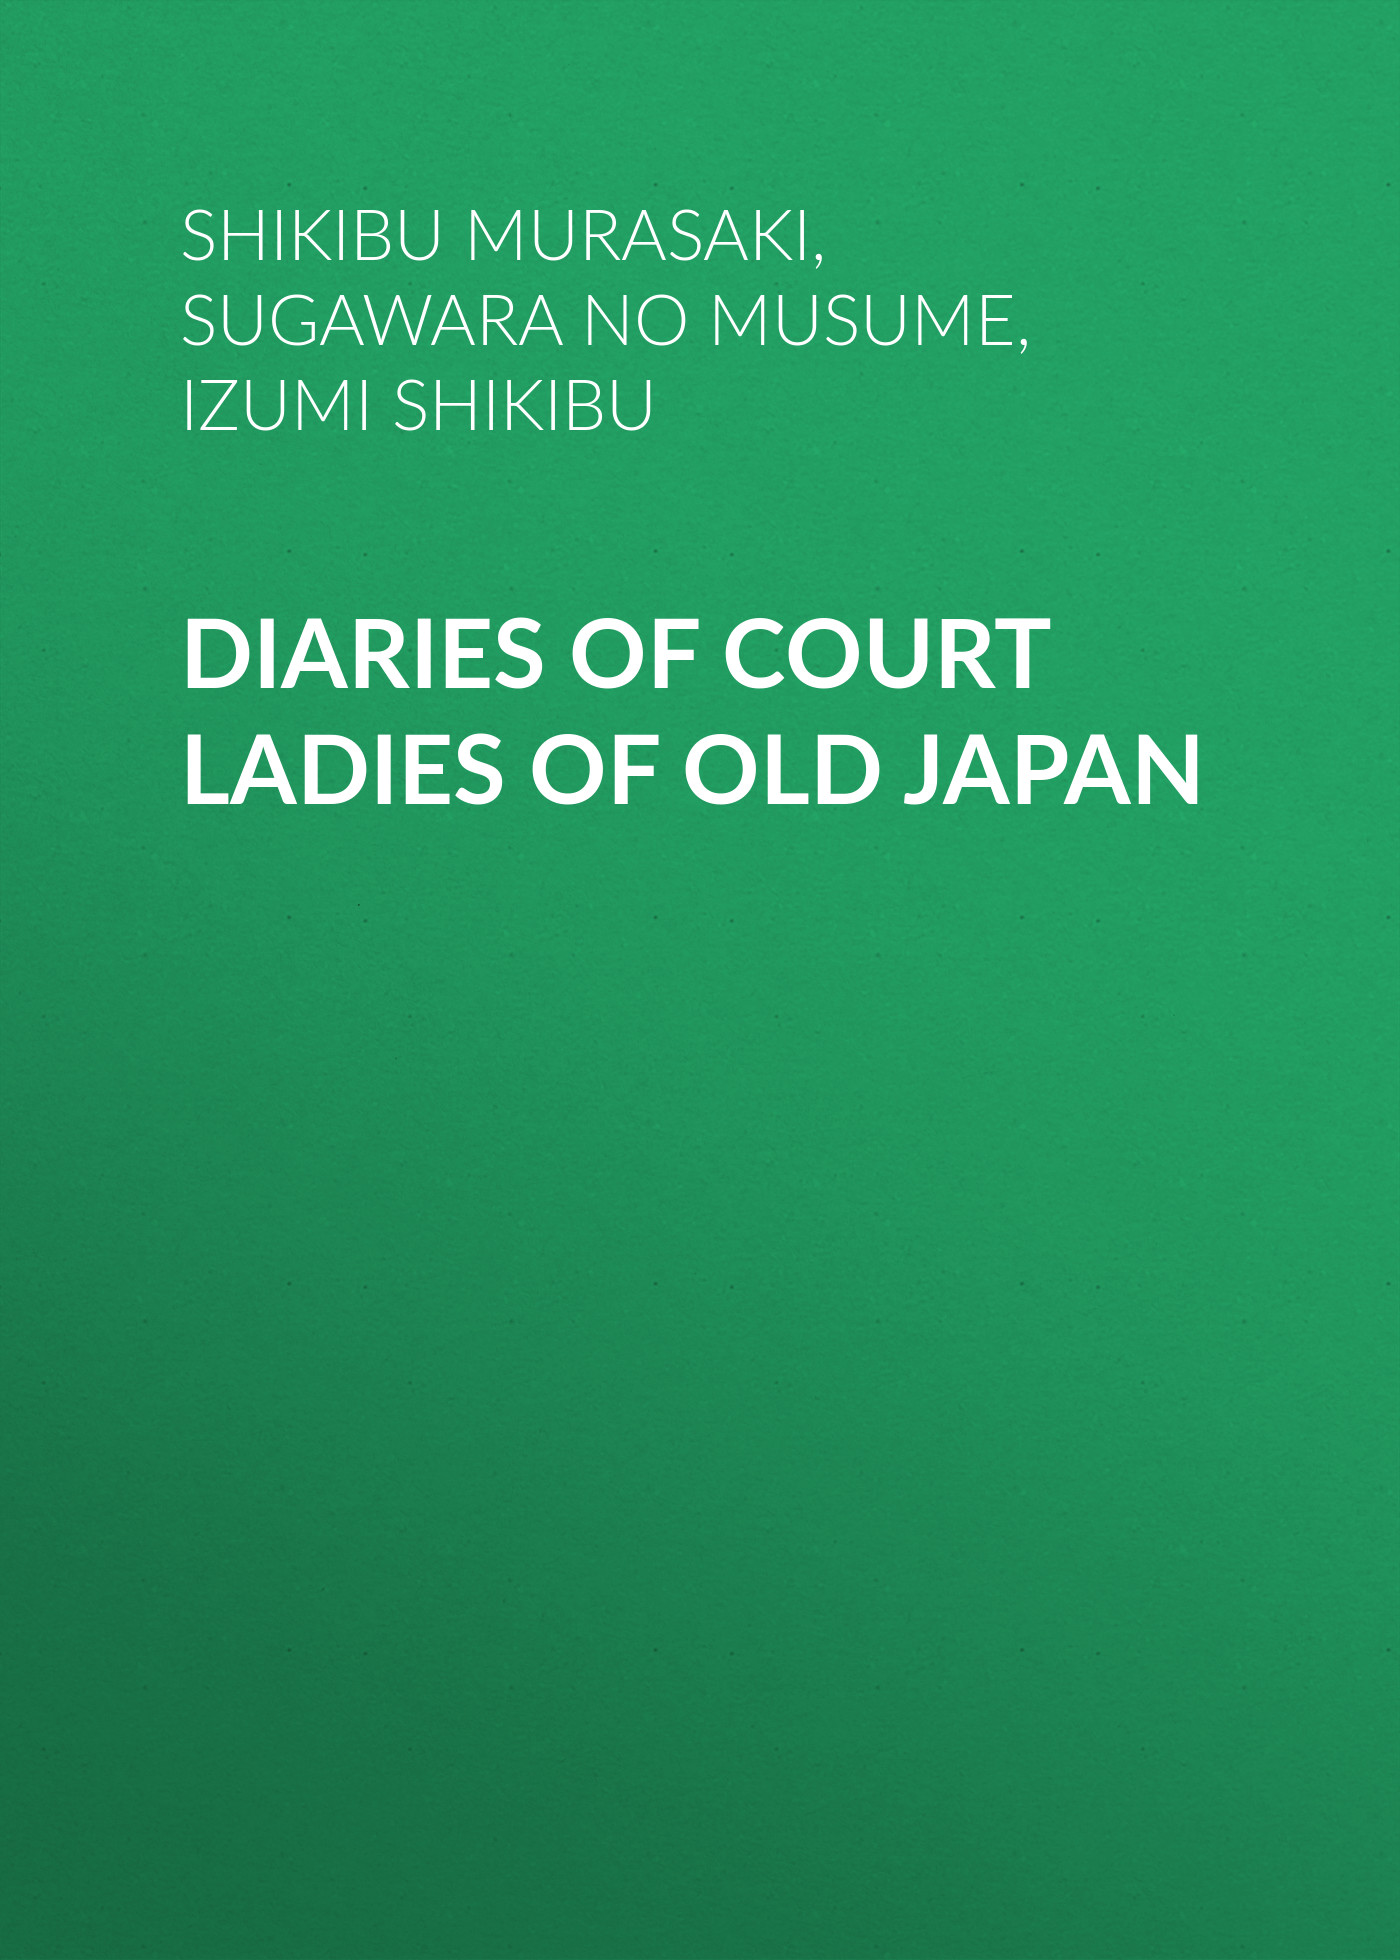 Книга Diaries of Court Ladies of Old Japan из серии , созданная Shikibu Murasaki, Izumi Shikibu,  Sugawara no Takasue no Musume, может относится к жанру История, Зарубежная образовательная литература. Стоимость электронной книги Diaries of Court Ladies of Old Japan с идентификатором 25568767 составляет 0 руб.